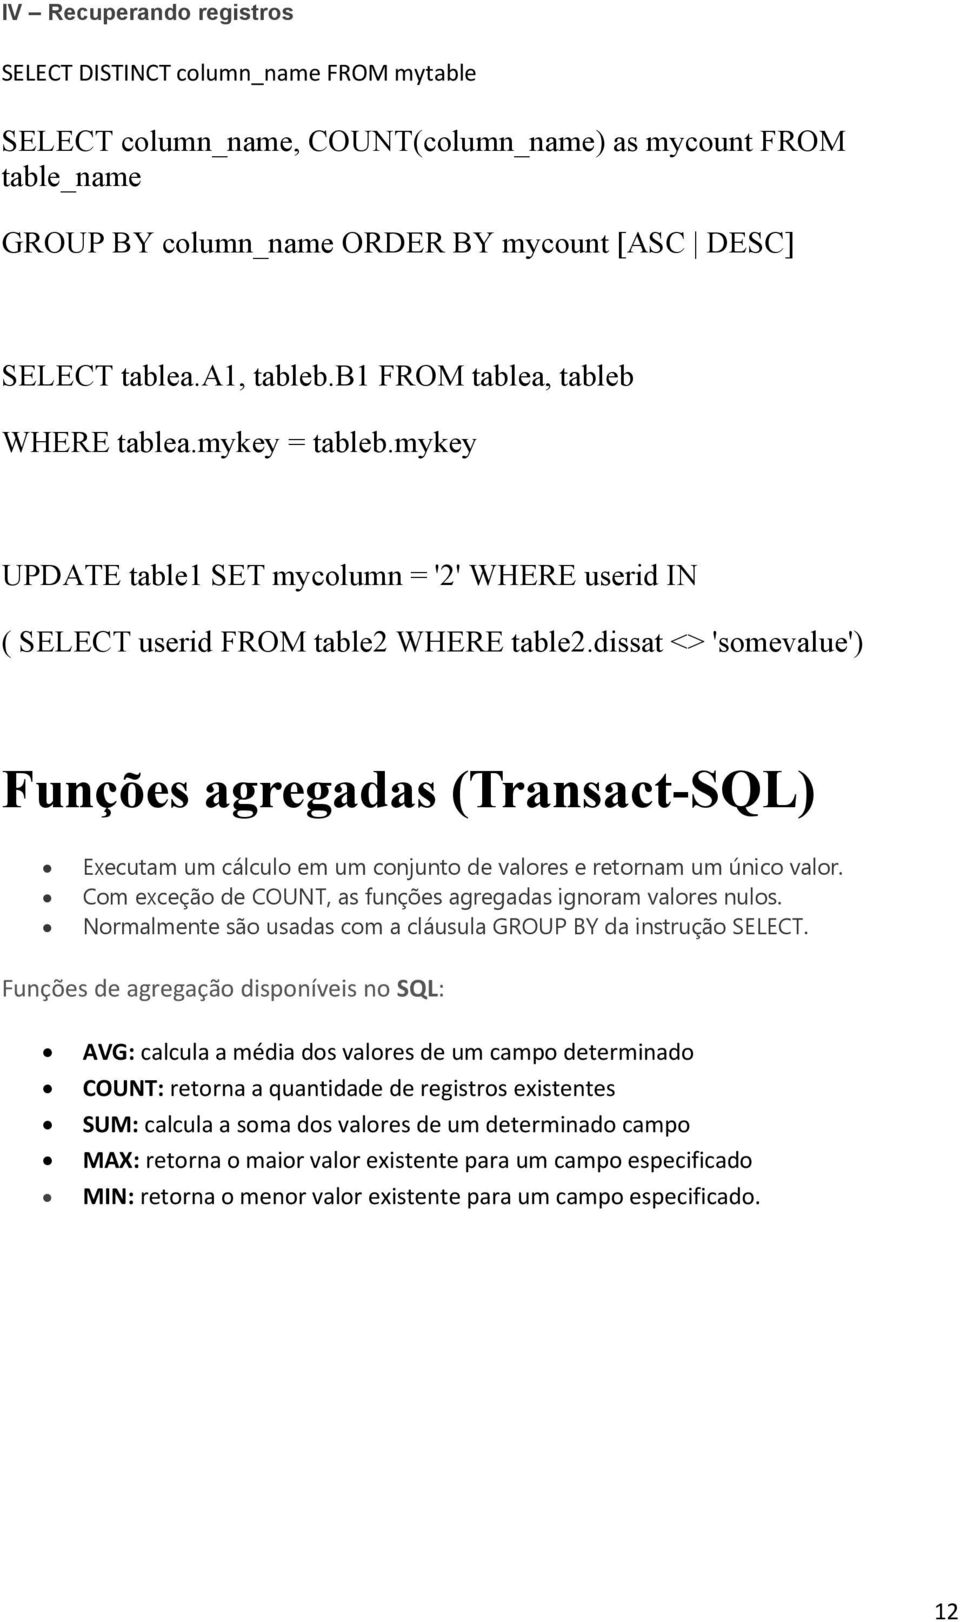 dissat <> 'somevalue') Funções agregadas (Transact-SQL) Executam um cálculo em um conjunto de valores e retornam um único valor. Com exceção de COUNT, as funções agregadas ignoram valores nulos.